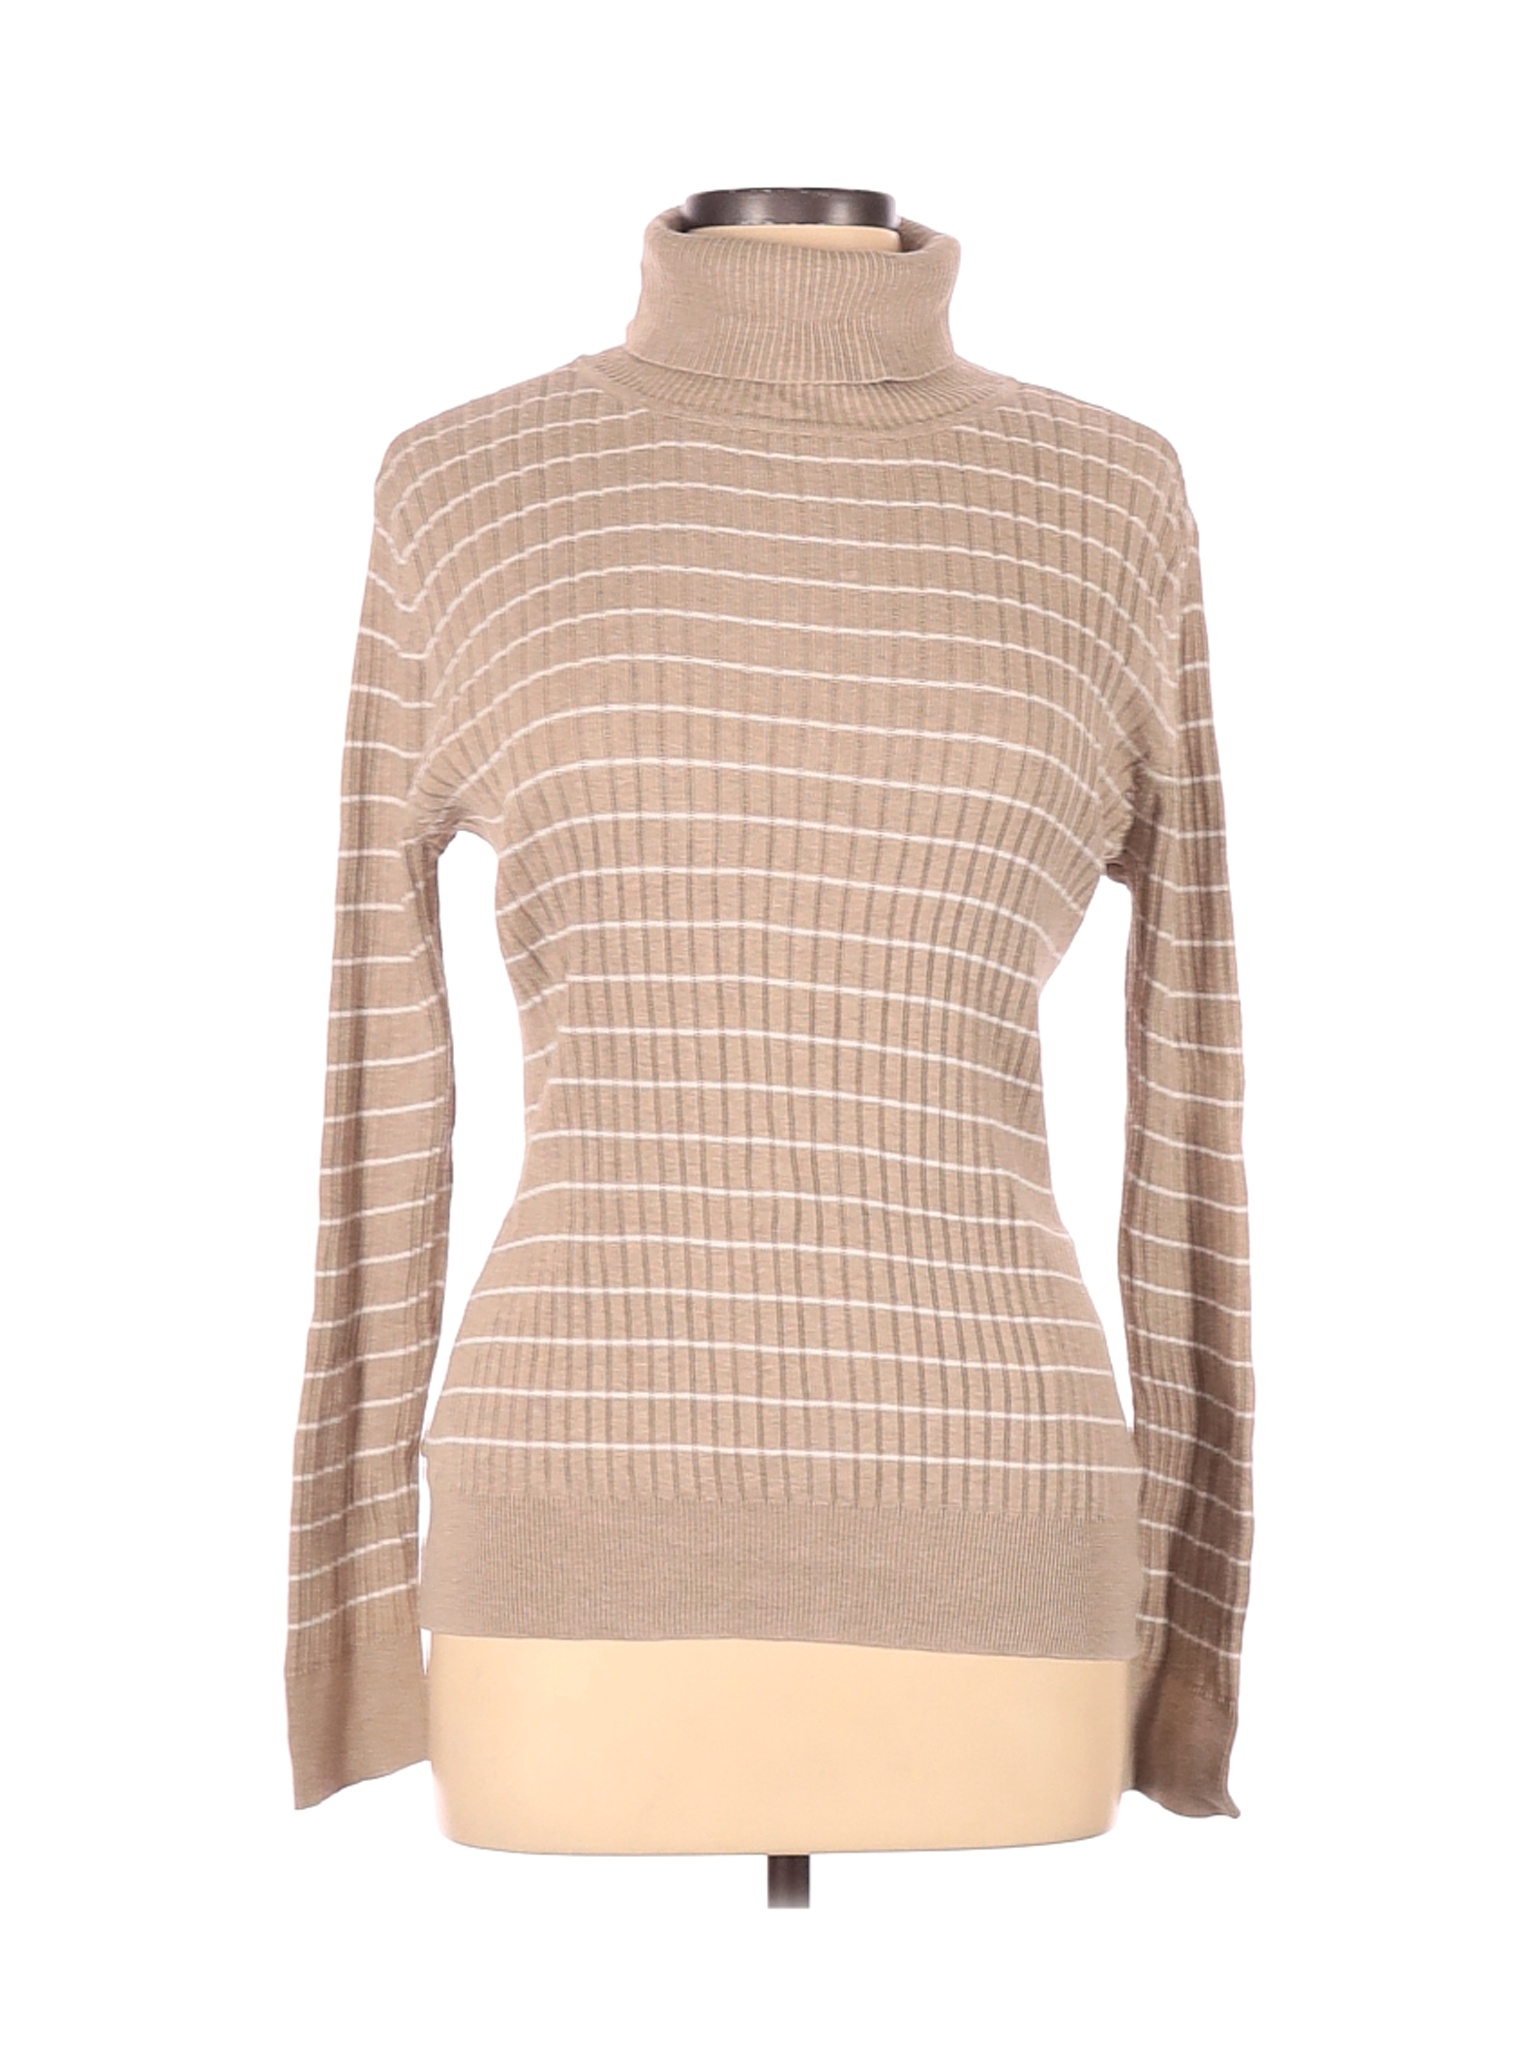 Croft & Barrow Women Brown Turtleneck Sweater L | eBay